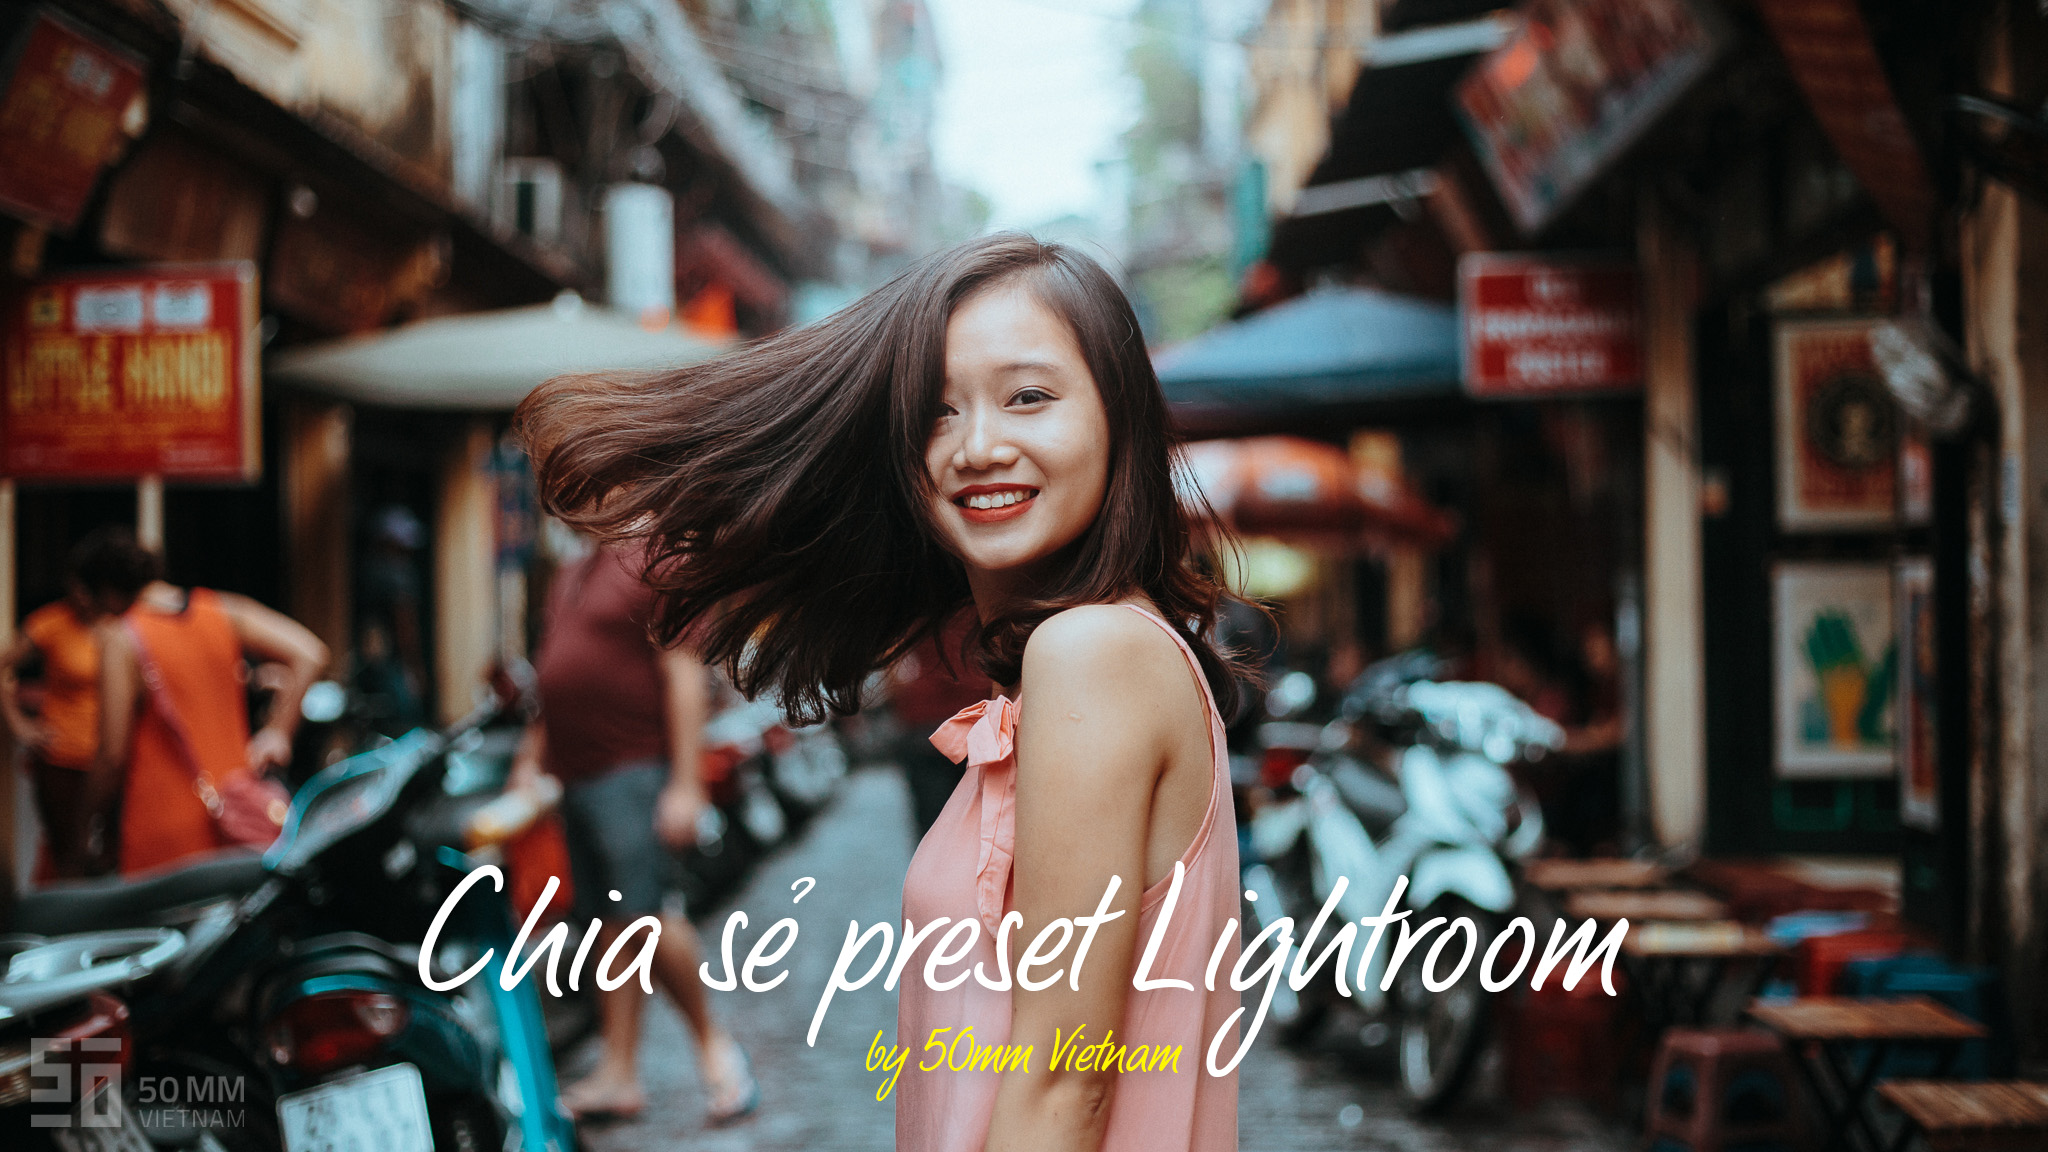 Gửi tặng Preset Lightroom do 50mm Vietnam tự chế! | 50mm Vietnam